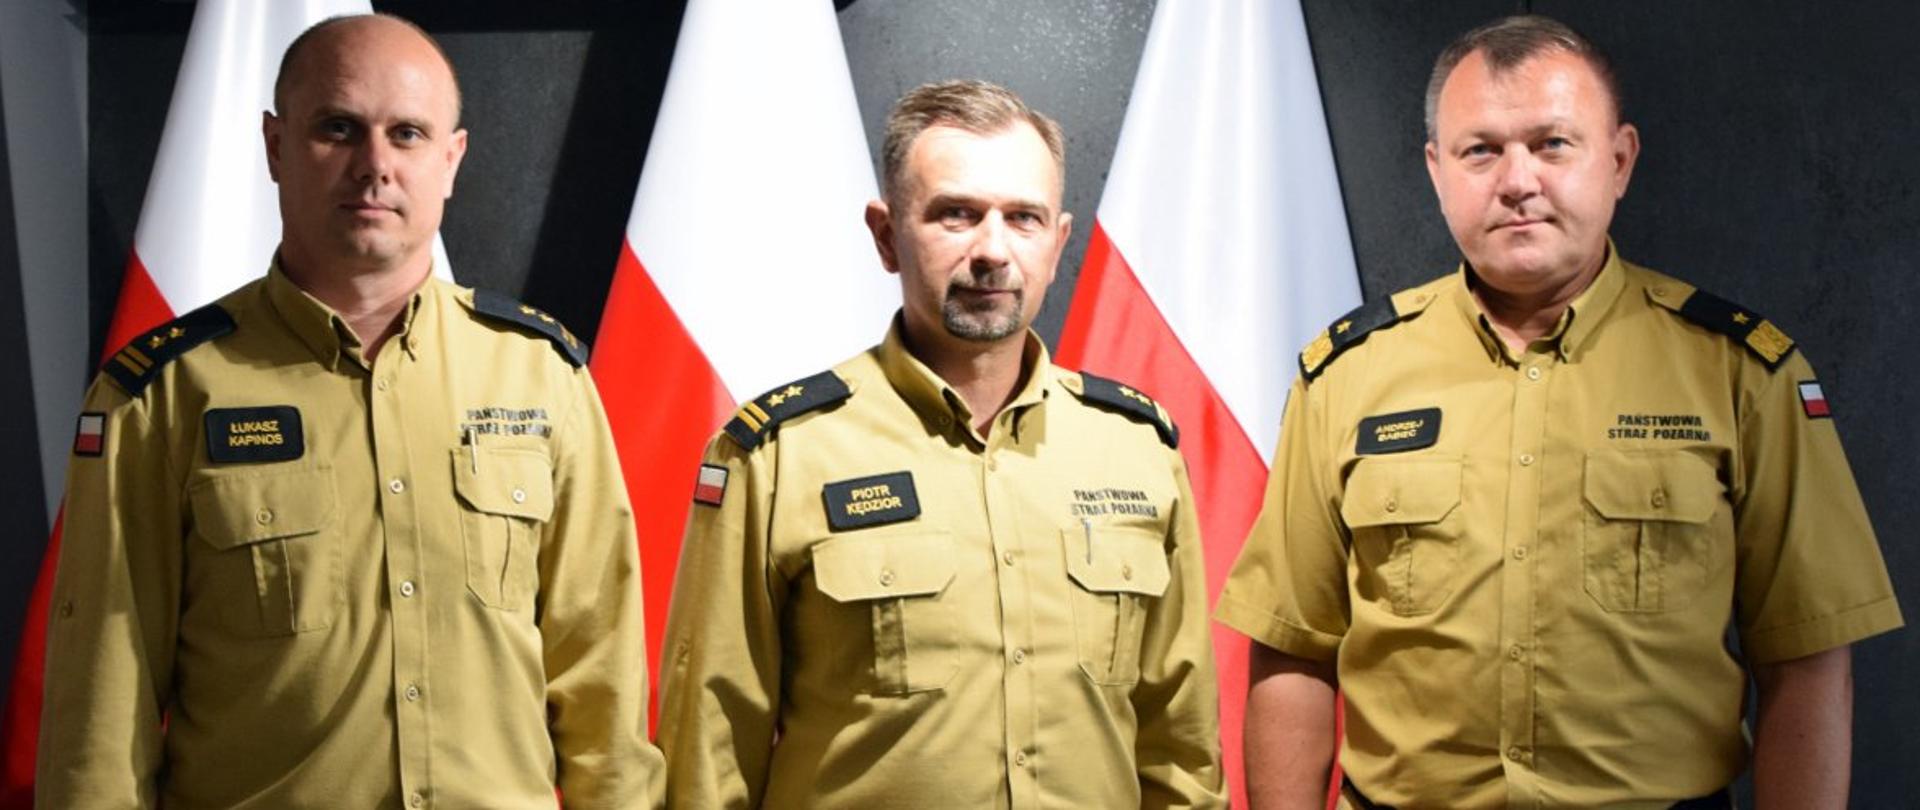 Zdjęcie zrobione wewnątrz pomieszczenia. Na zdjęciu trzech oficerów Państwowej Straży Pożarnej ubranych w mundury koloru piaskowego. Za nimi stoją biało-czerwone flagi.